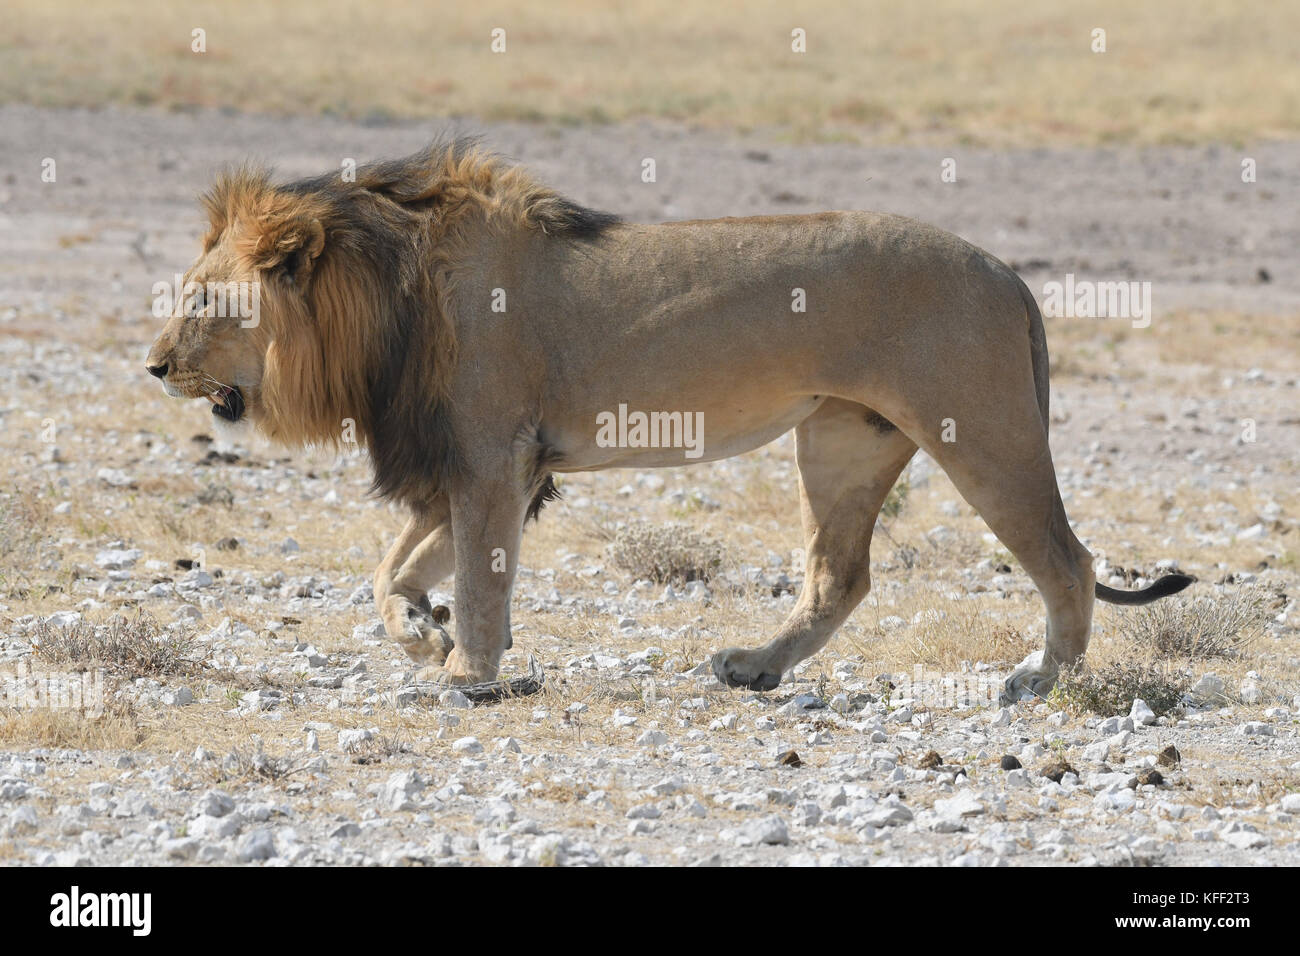 Safari at Etosha, Namibia Stock Photo